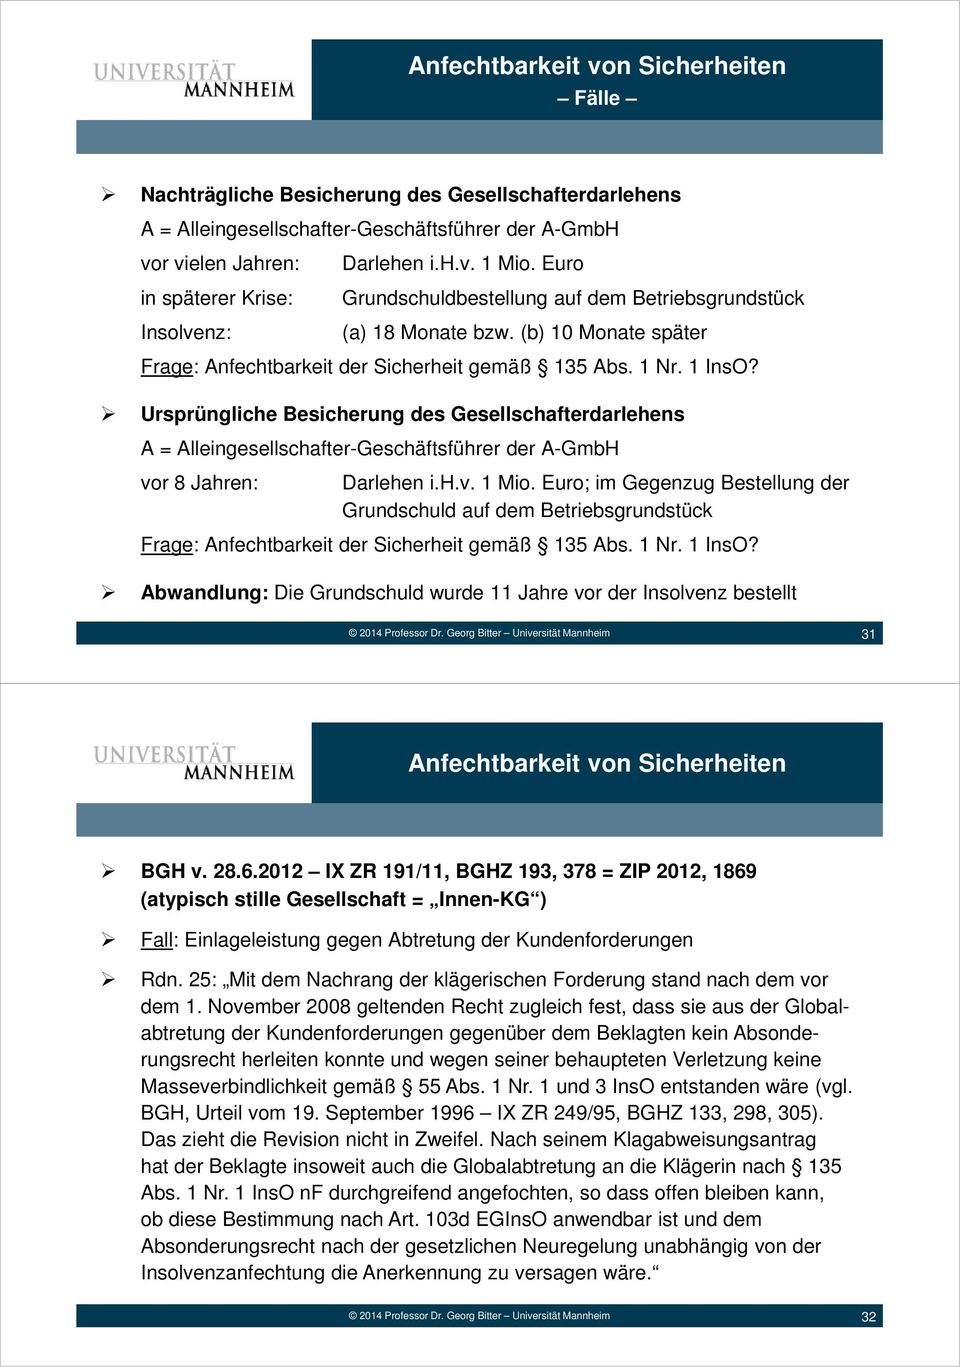 Ursprüngliche Besicherung des Gesellschafterdarlehens A = Alleingesellschafter-Geschäftsführer der A-GmbH vor 8 Jahren: Darlehen i.h.v. 1 Mio.